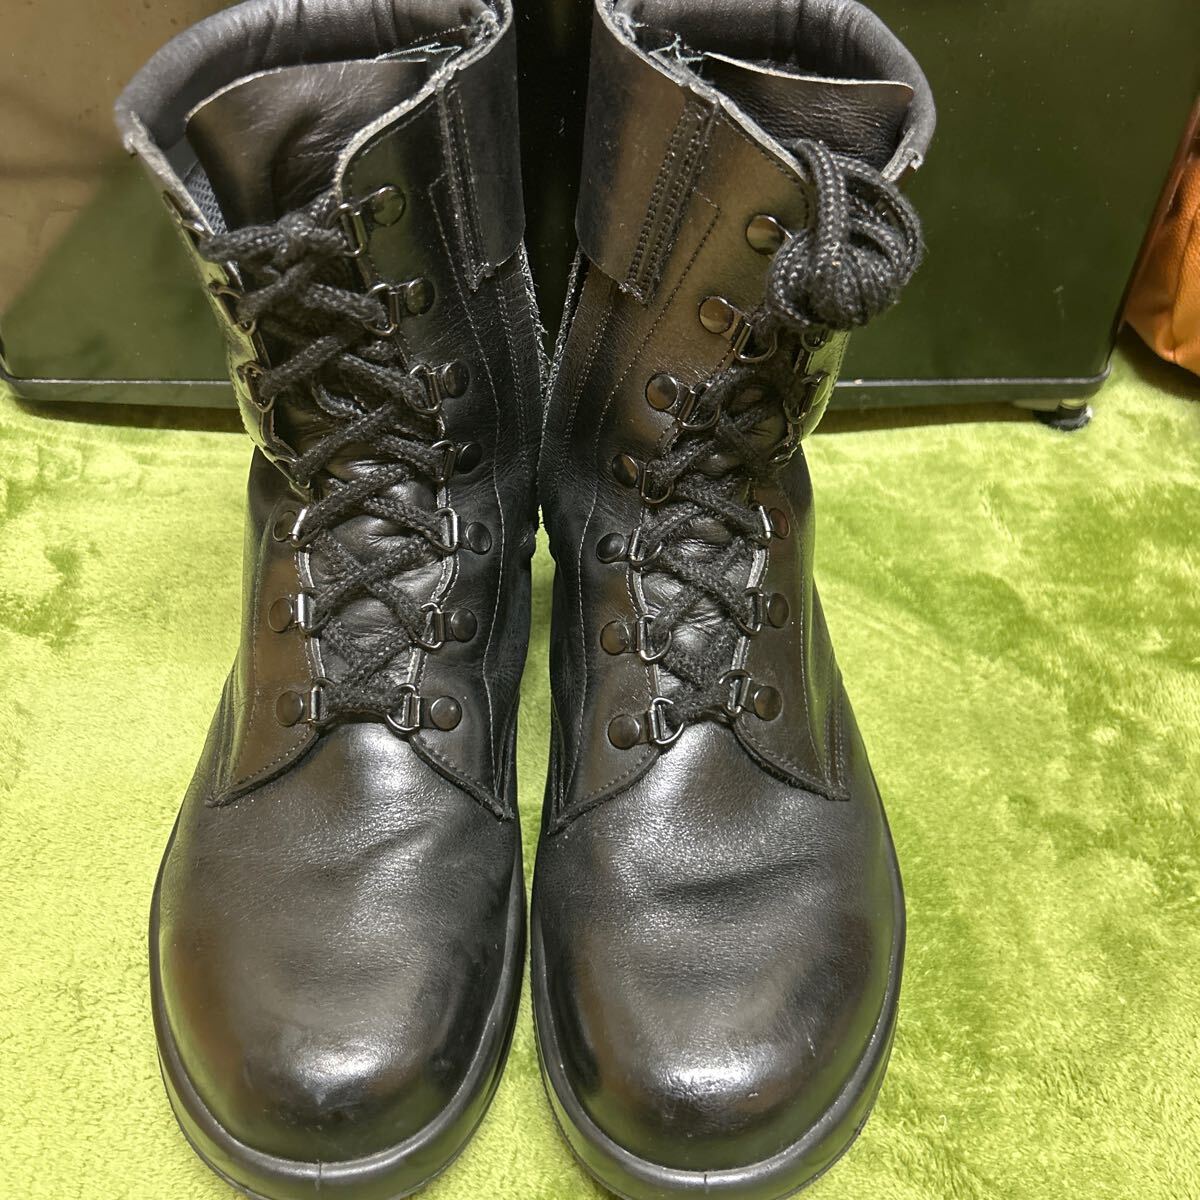 男性警察官用 警備靴(静電気帯電防止) Simon シモン 日本製 JIS 革製 黒色 警察グッズ 25.5cm ブーツ コスプレ の画像1